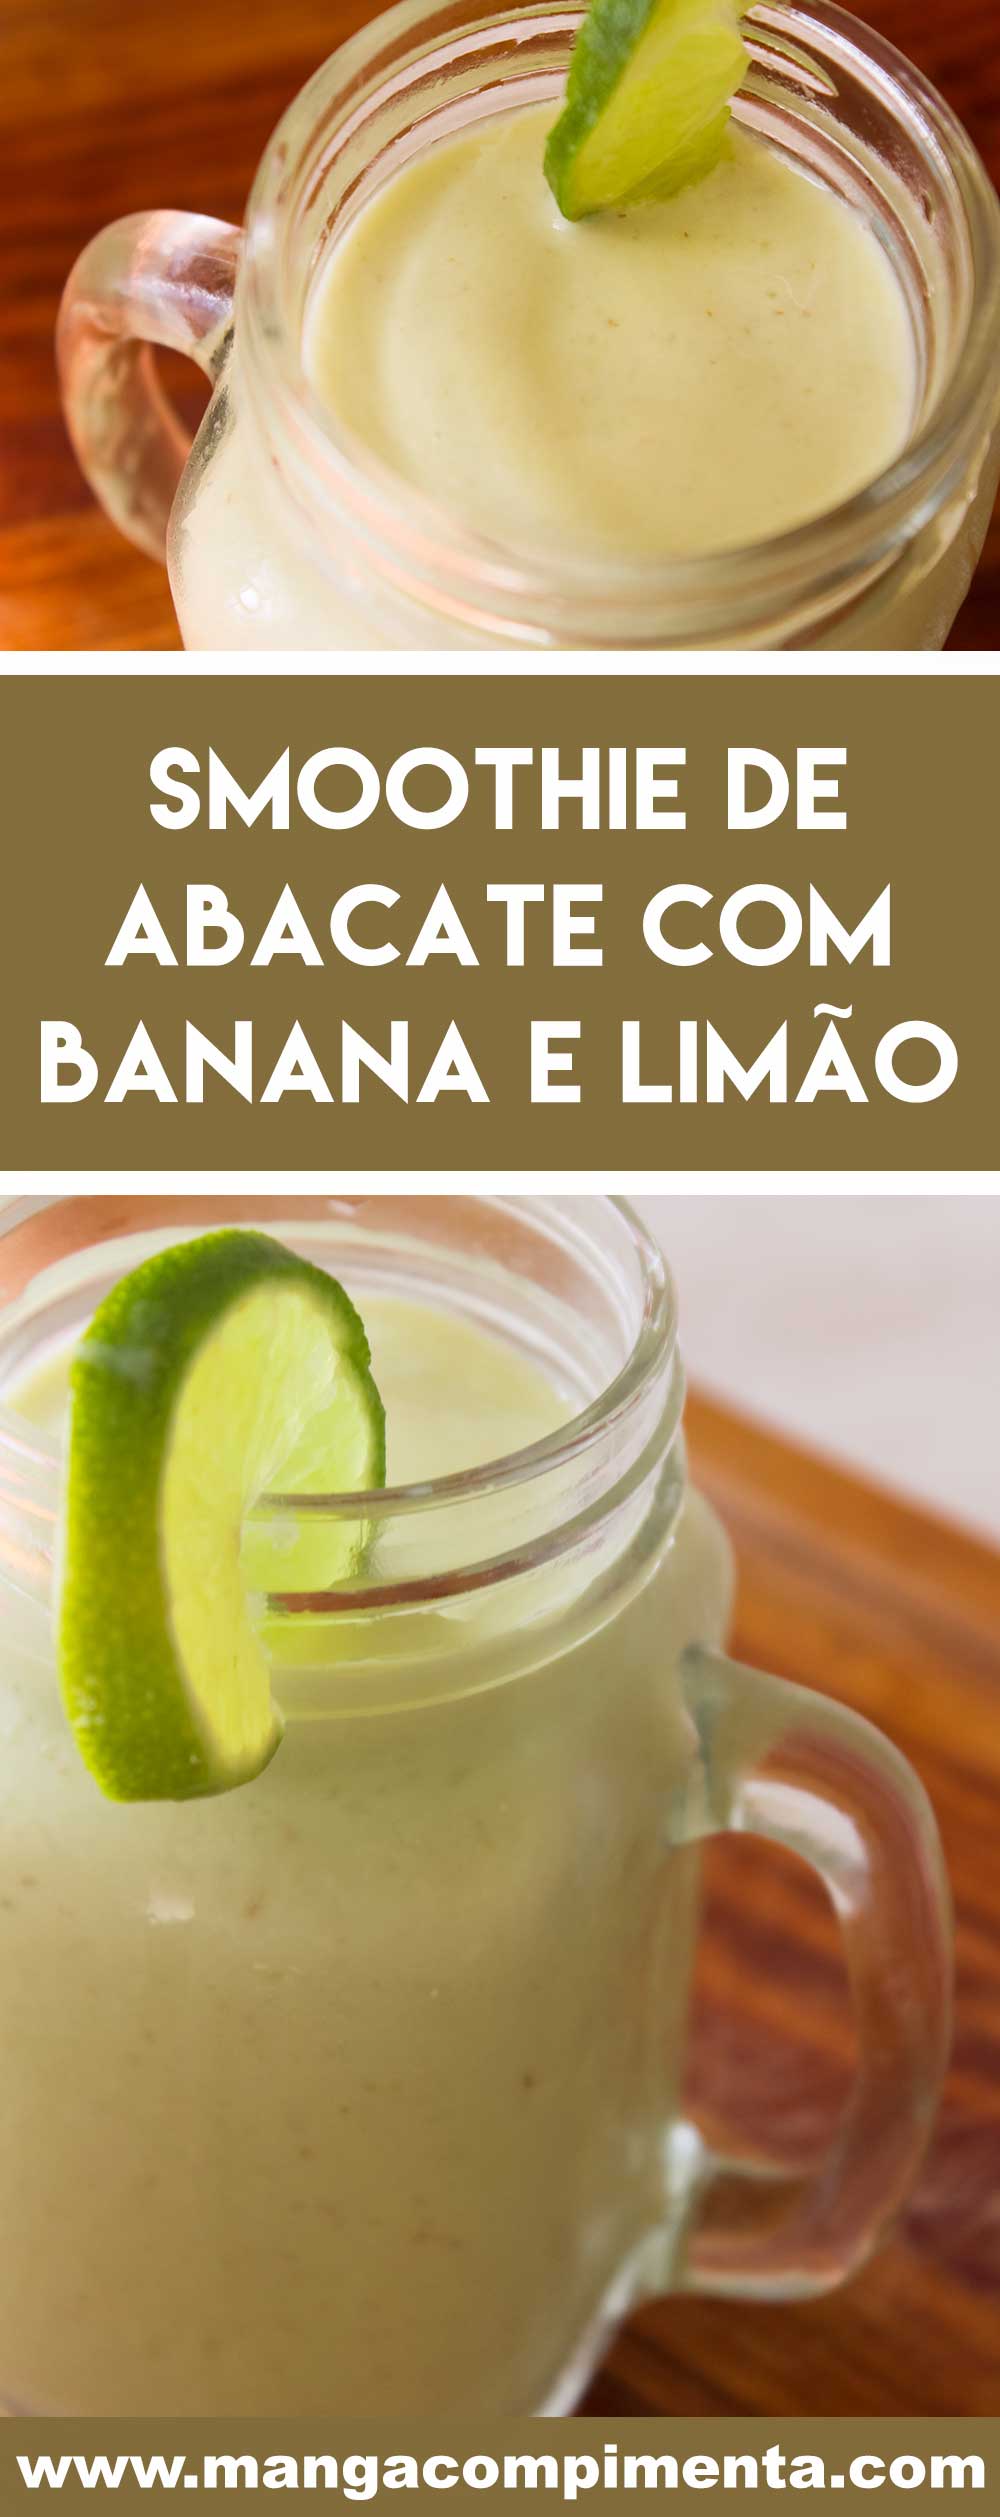 Receita de Smoothie de Abacate com Banana e Limão - uma bebida geladinha e nutritiva para começar o dia!